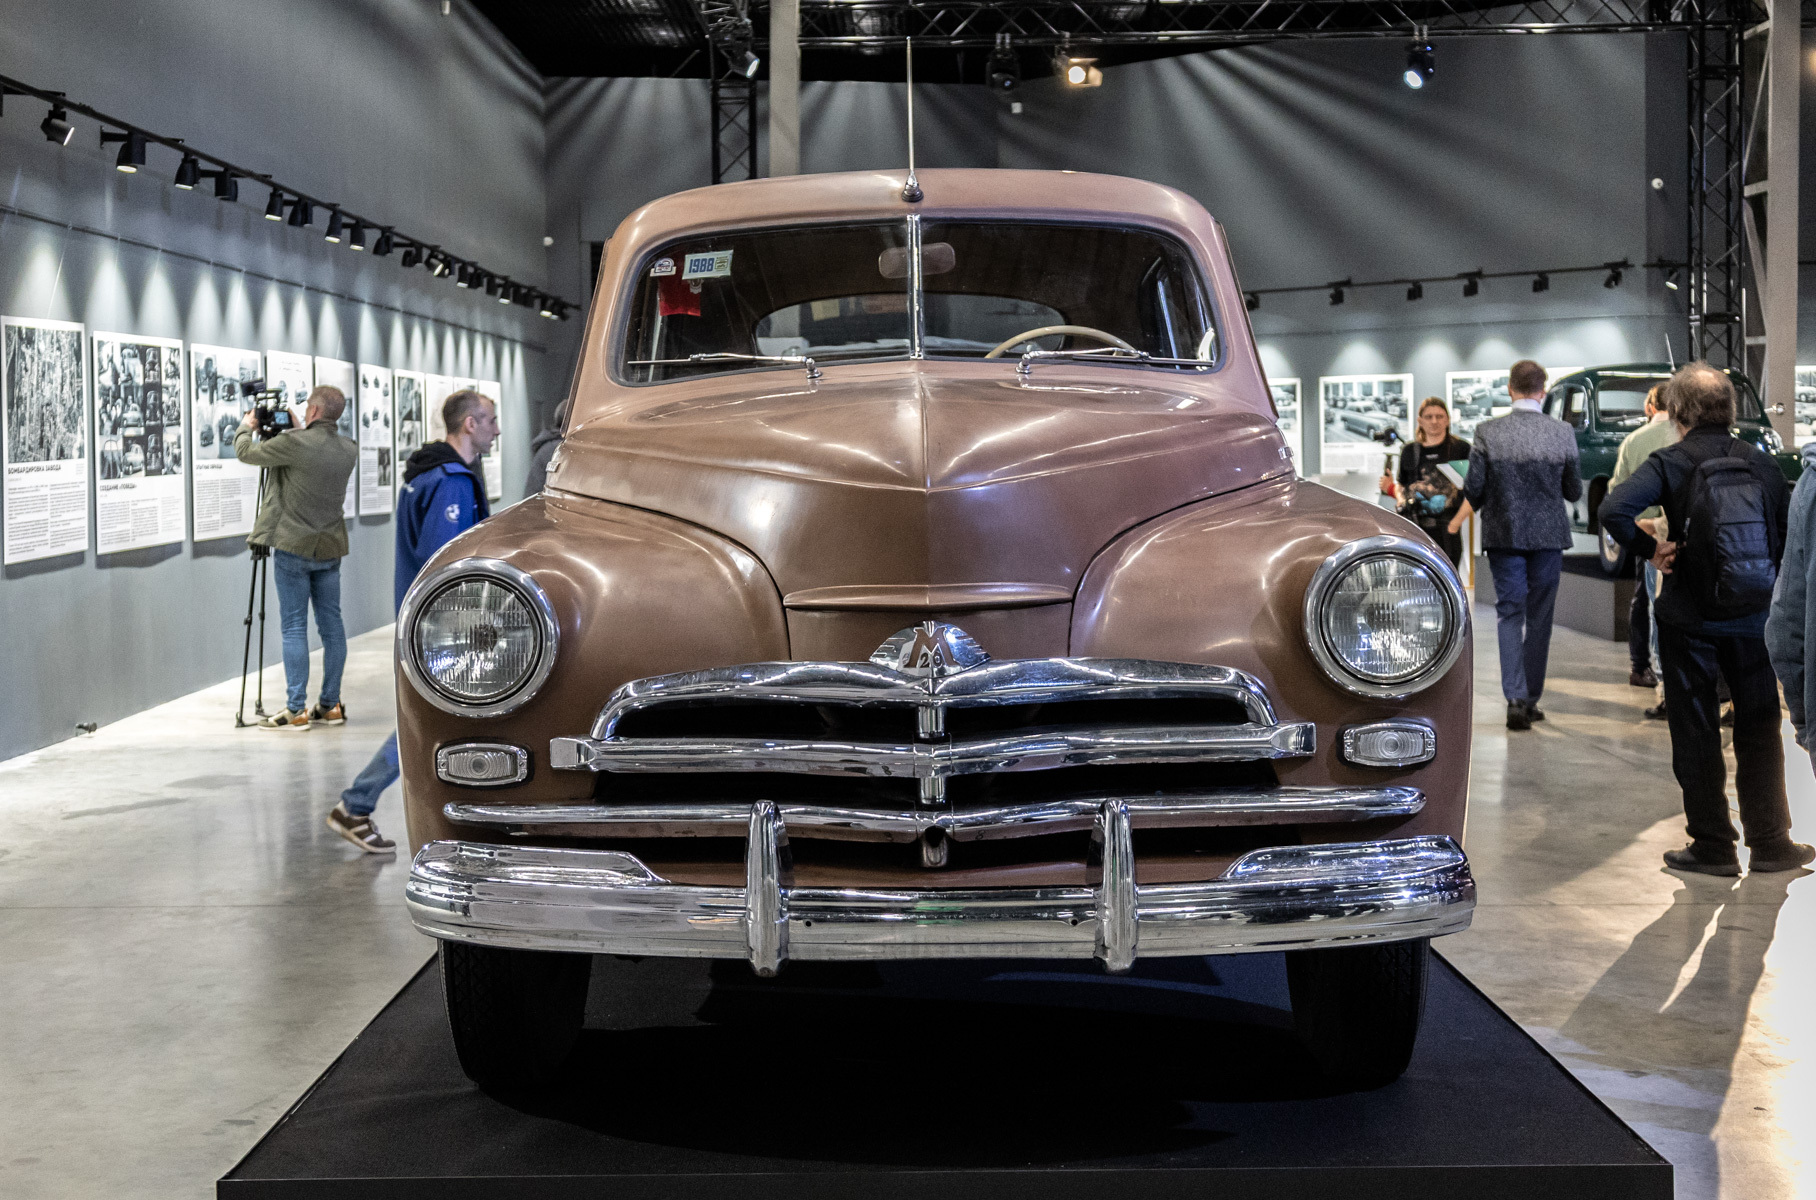 Производство «Победы» началось в августе 1946 года. На фото автомобиль 1955 года, выпущенный в момент перехода со второй на третью серию.